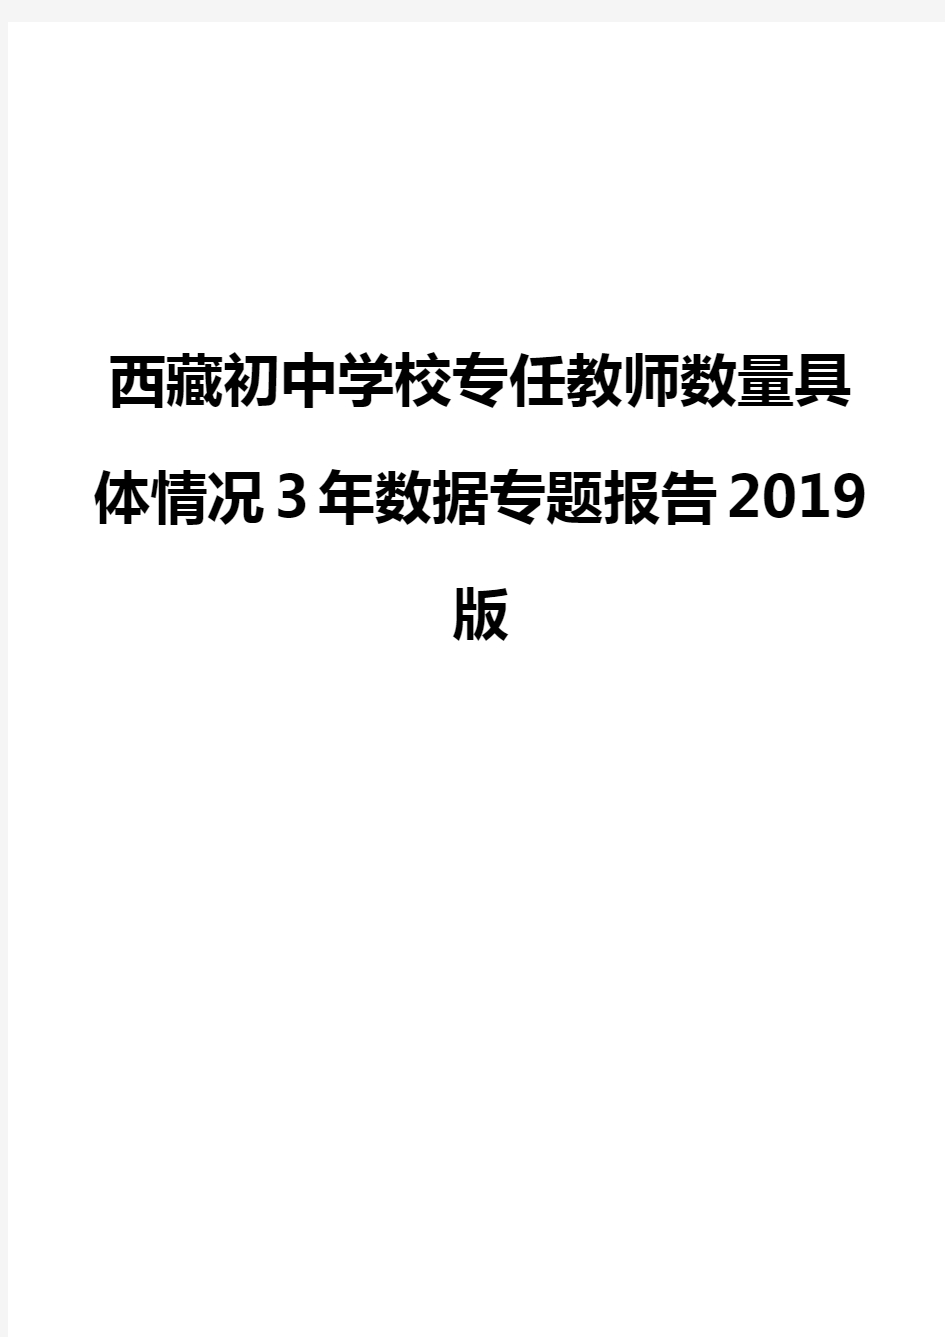 西藏初中学校专任教师数量具体情况3年数据专题报告2019版